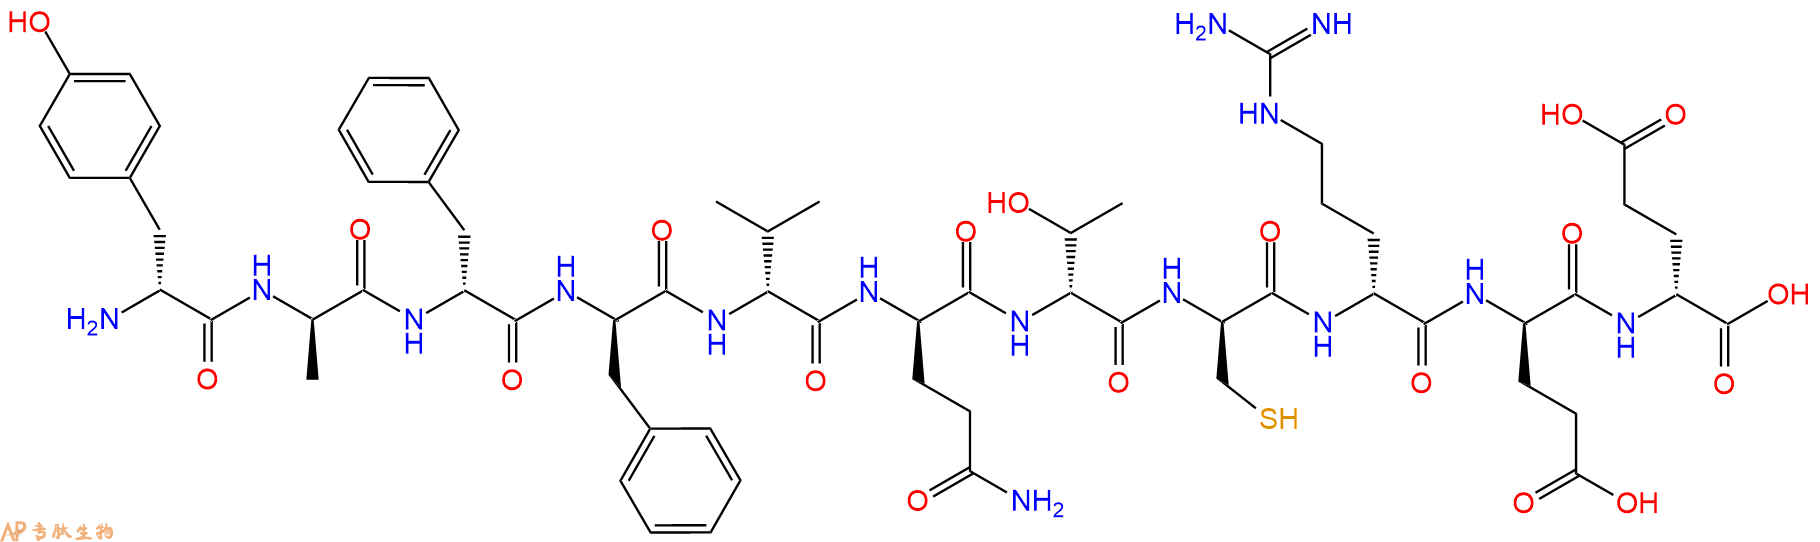 专肽生物产品H2N-DTyr-DAla-DPhe-DPhe-DVal-DGln-DThr-DCys-DArg-D